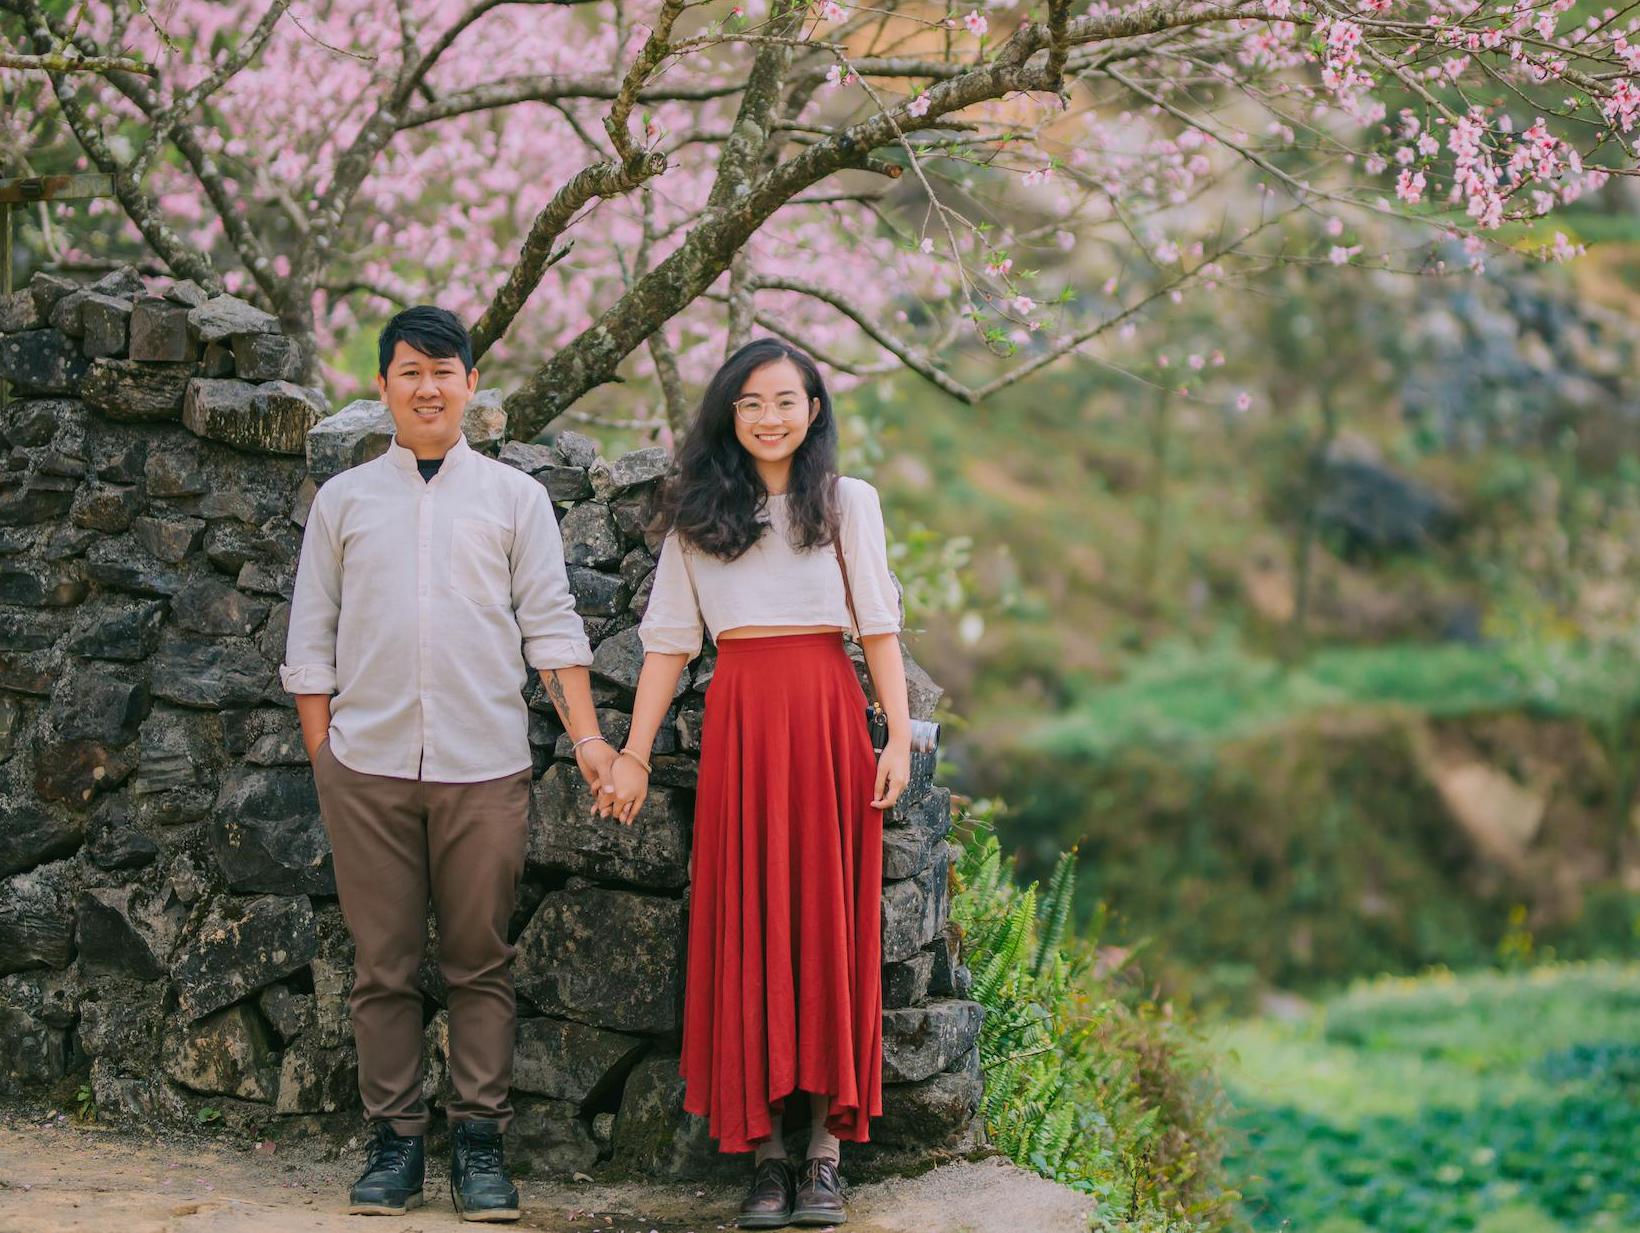 Hình ảnh cặp vợ chồng trẻ đang tình tứ ôm nhau tại Việt Nam sẽ khiến bạn đắm đuối và tưởng niệm tình yêu đích thực. Một bức ảnh đầy cảm hứng và lãng mạn chắc chắn sẽ khiến bạn nghĩ đến những kỷ niệm đẹp của mình và muốn trải nghiệm tình yêu với một người đáng yêu.